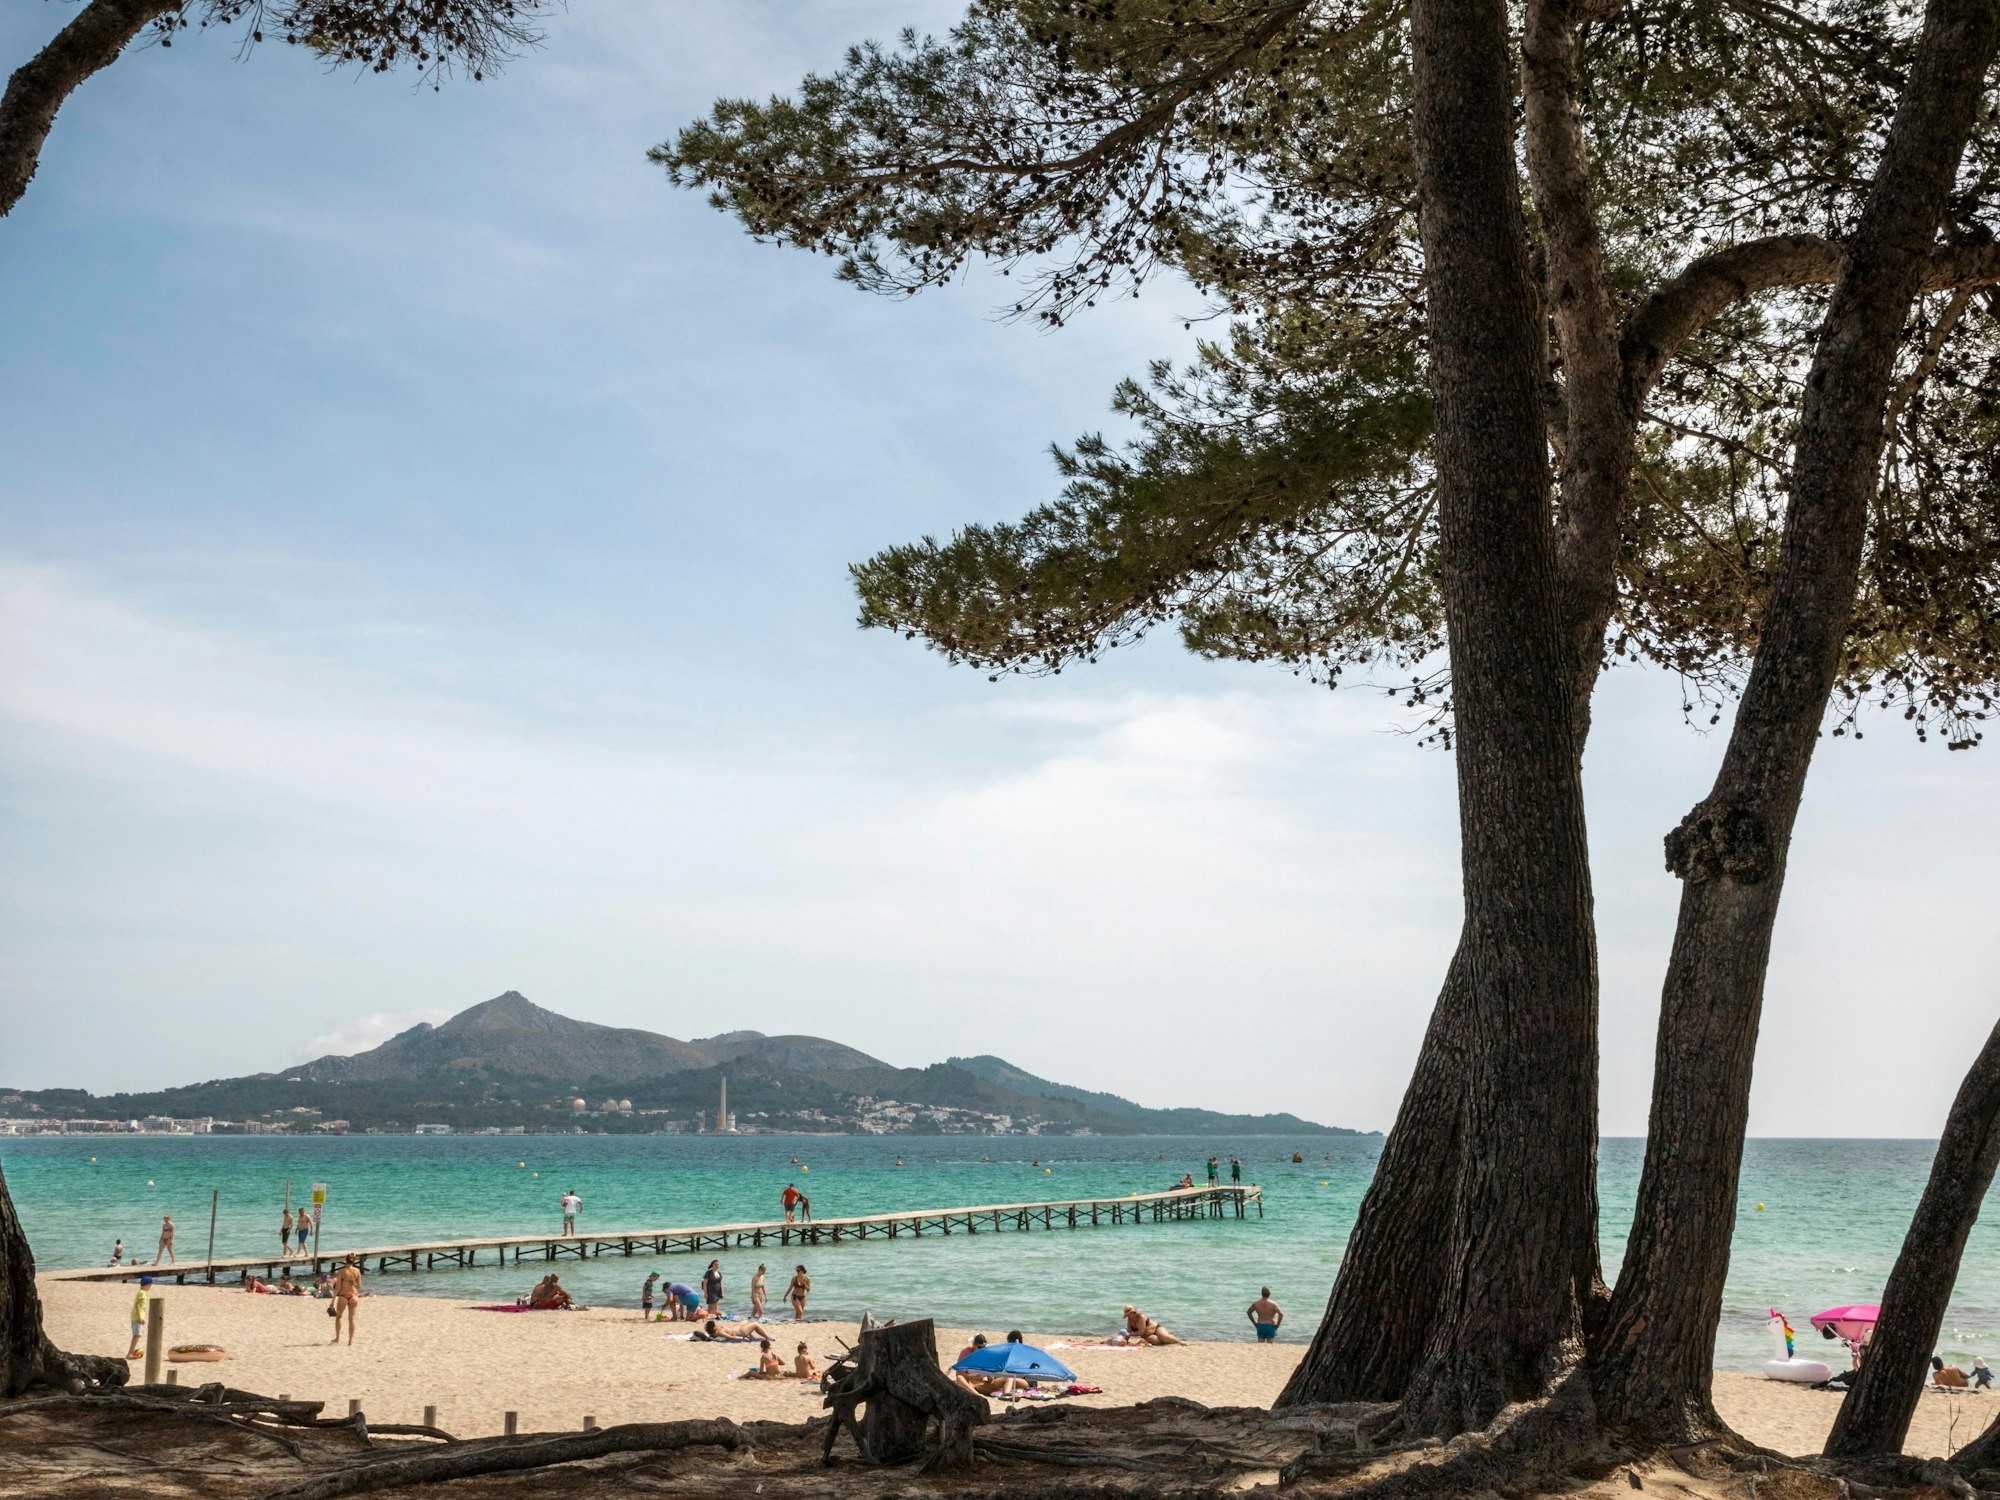 Menschen genießen das schöne Wetter am Strand von Muro auf Mallorca.